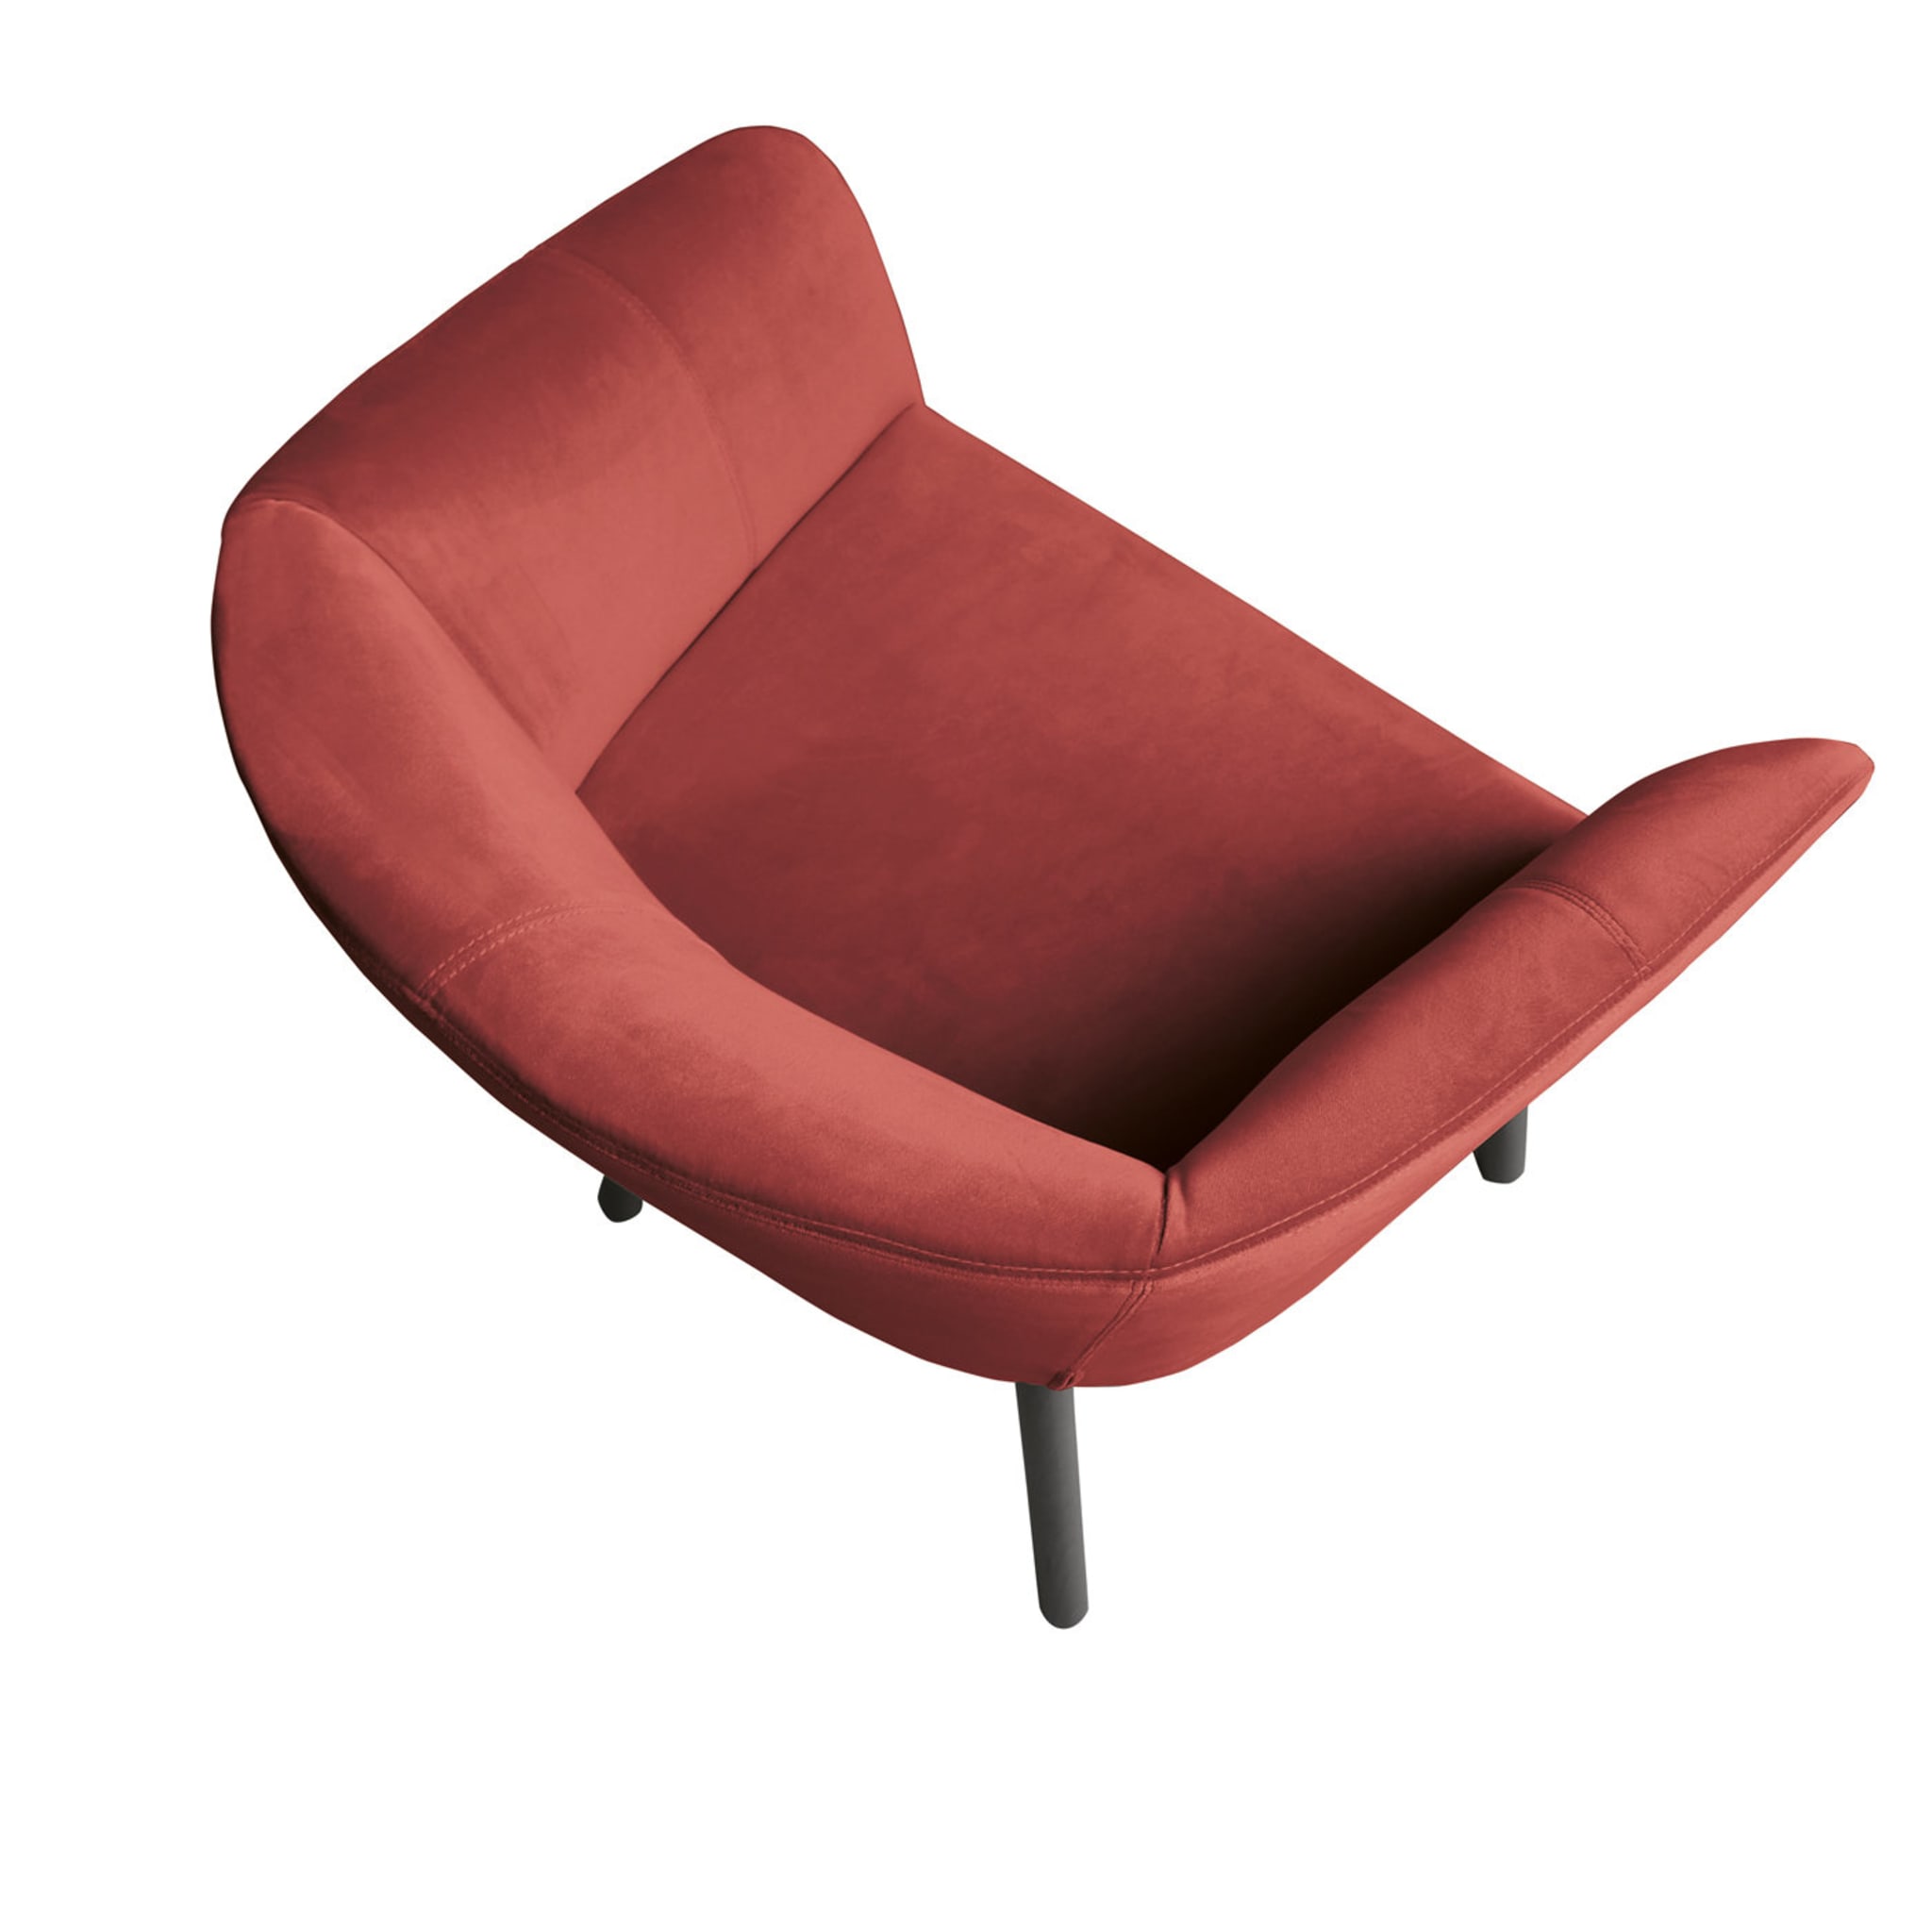 Balù Roter Stuhl von Emilio Nanni - Alternative Ansicht 1